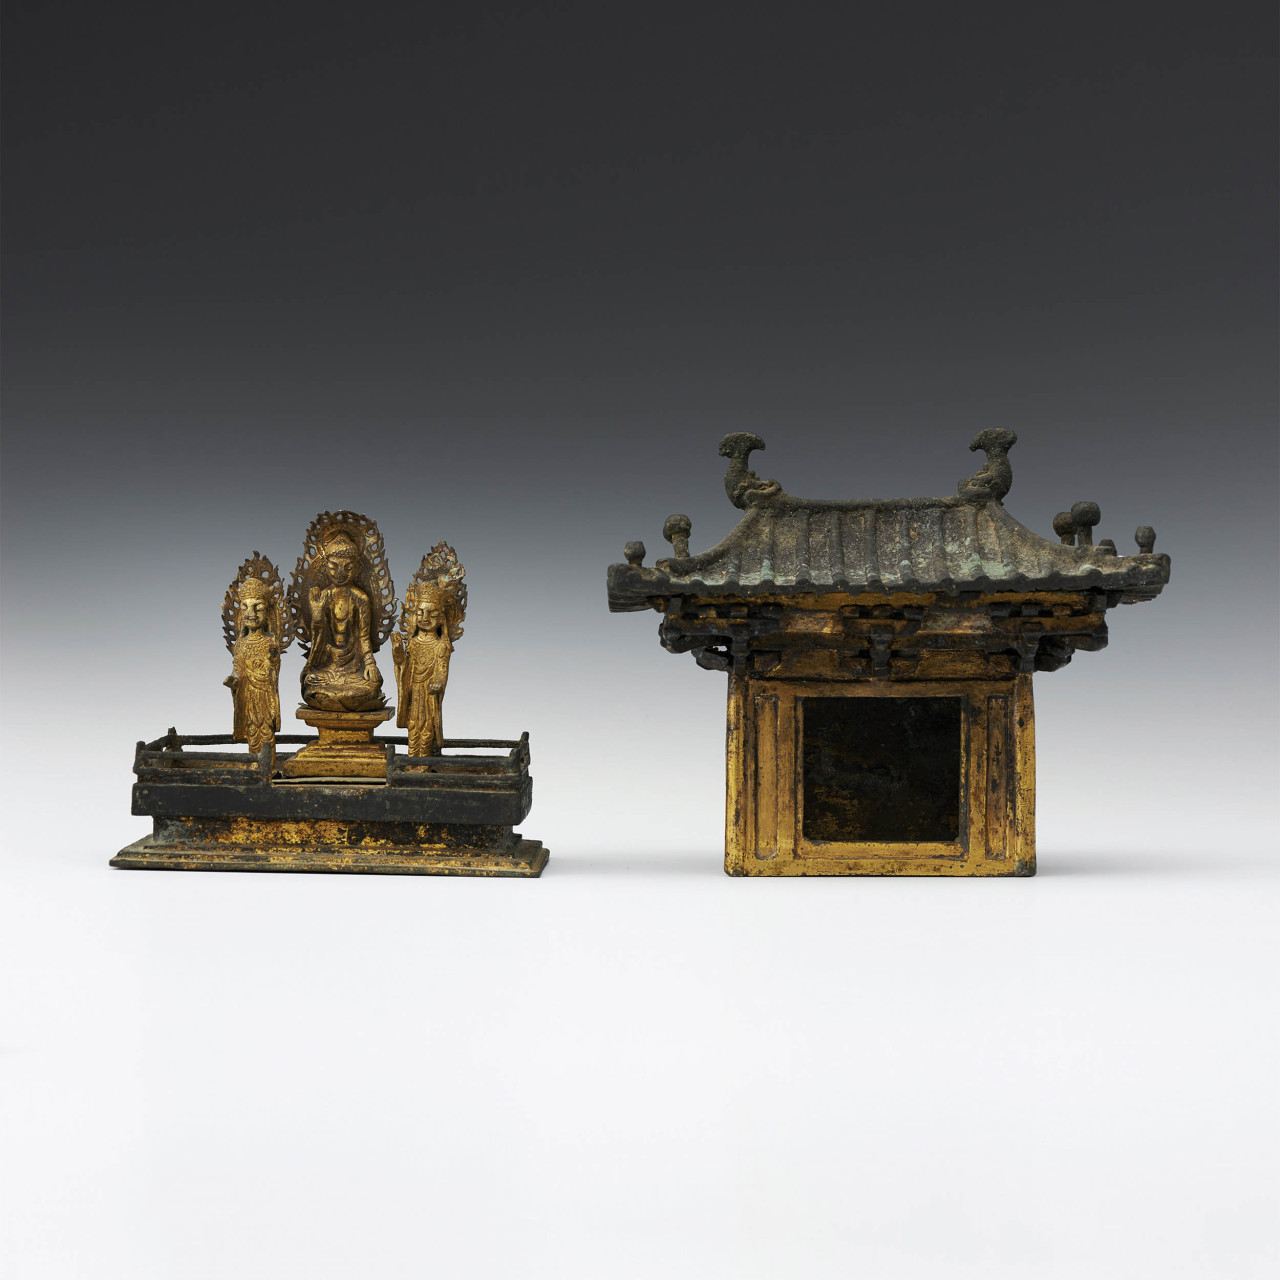 National Treasure No. 73, Portable Shrine of Gilt-bronze Buddha Triad (K Auction)